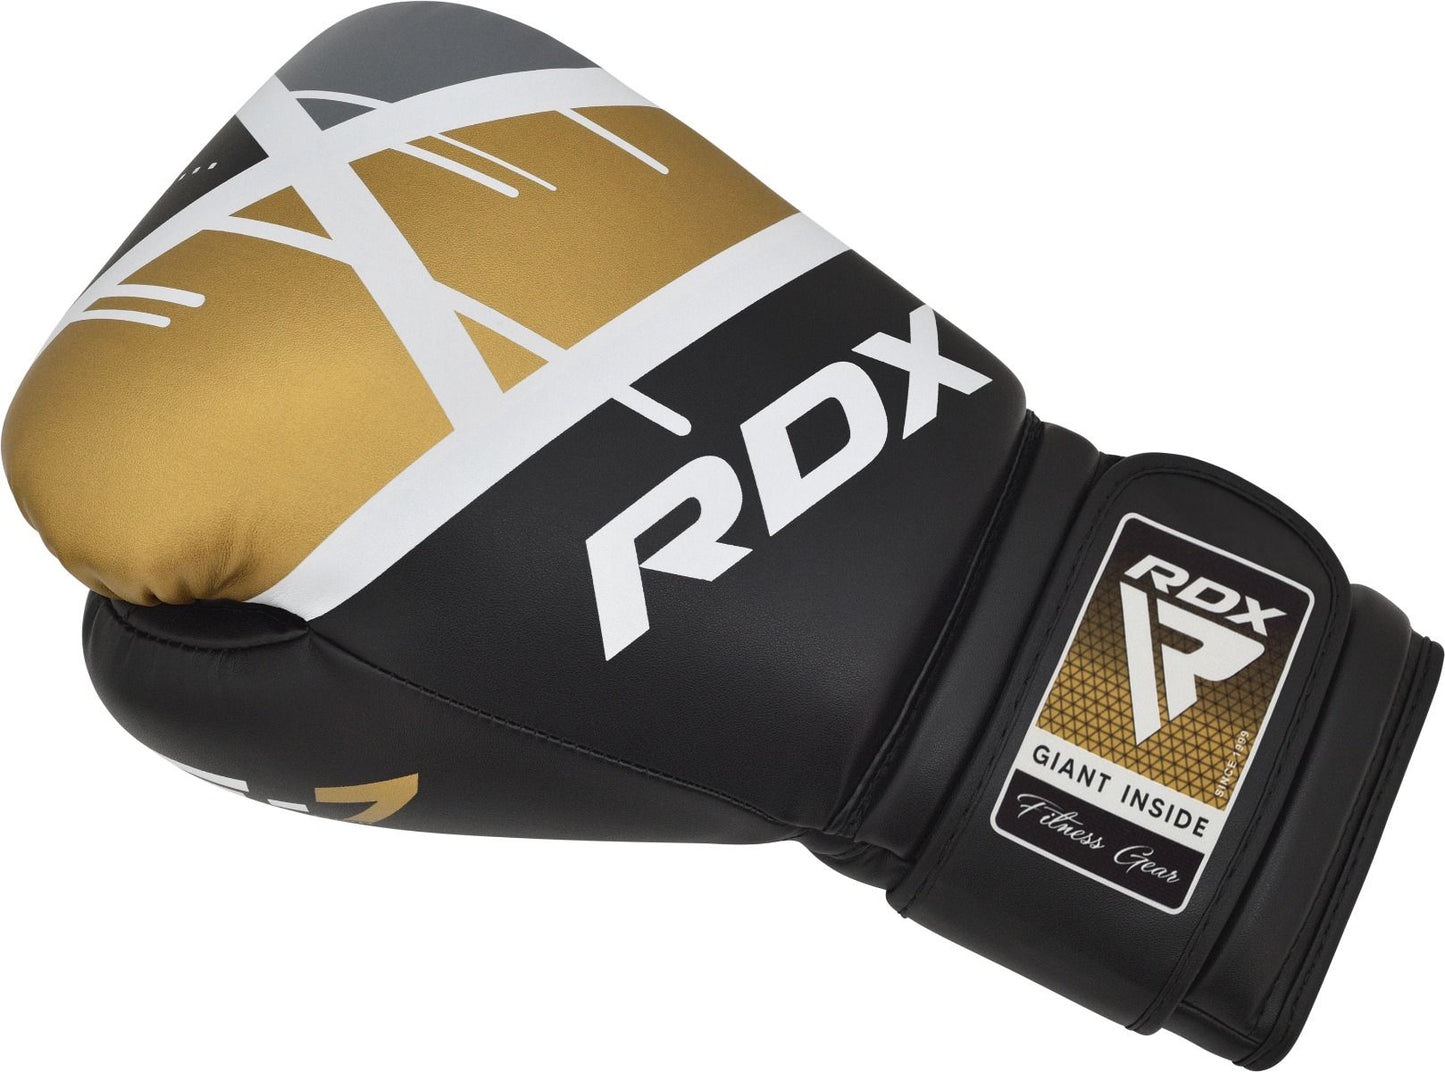 RDX F7 Ego gants de boxe d'entraînement